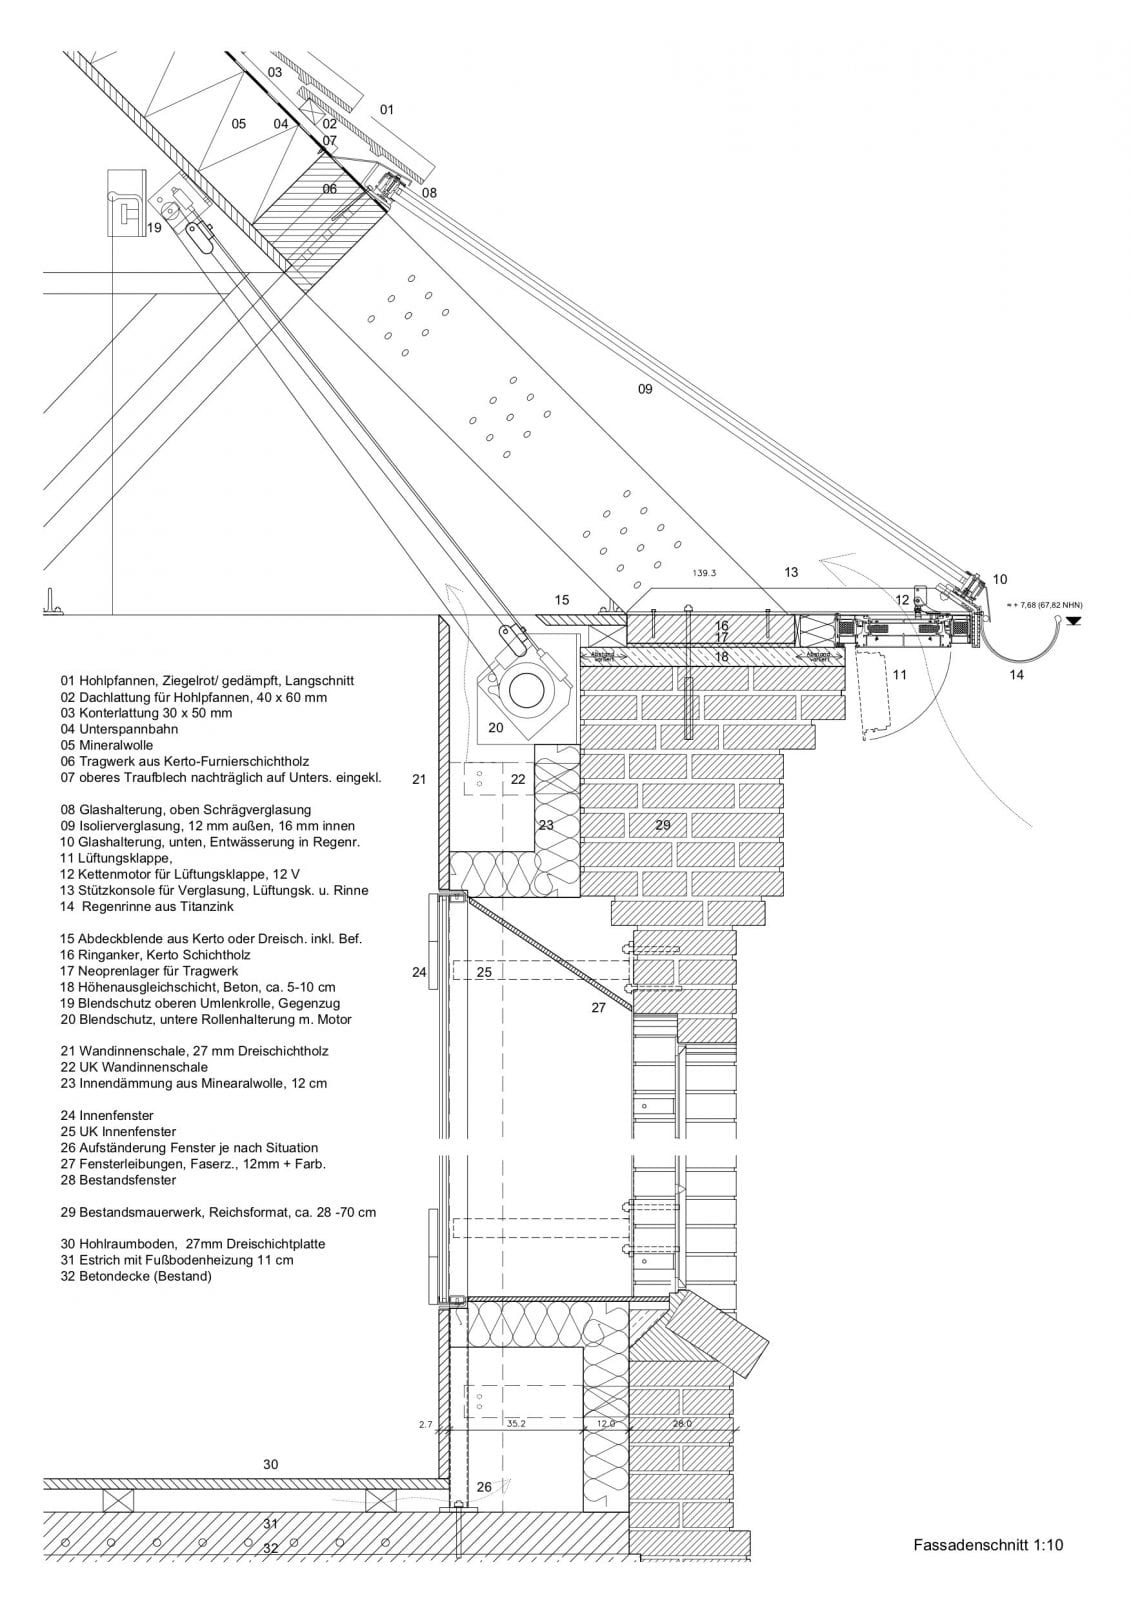 Umbau Alte Reiterkaserne, Kunstakademie Münster – Fassadenschnitt: Detailzeichnung im Maßstab 1:10 (Abbildung: Schüring Architekten BDA)